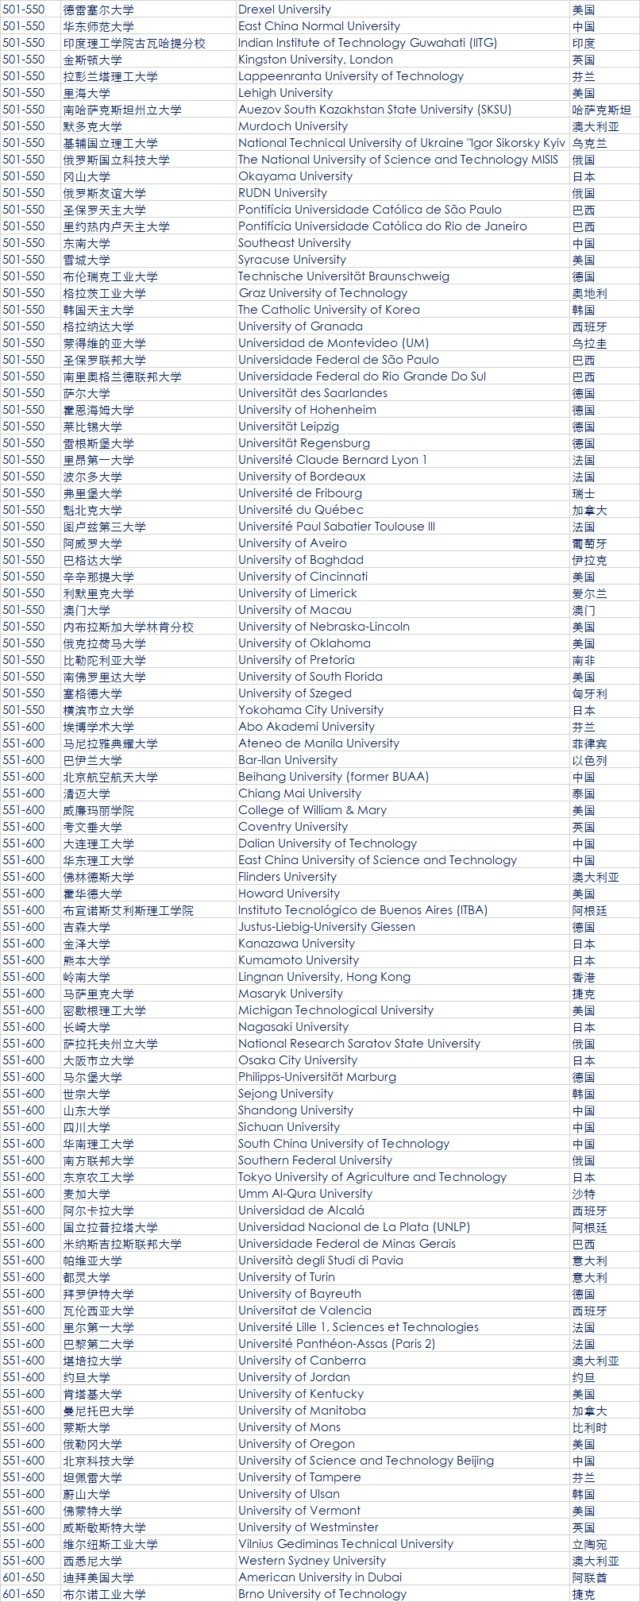 2018年QS世界大学排名发布 中国大陆6所高校进百强6